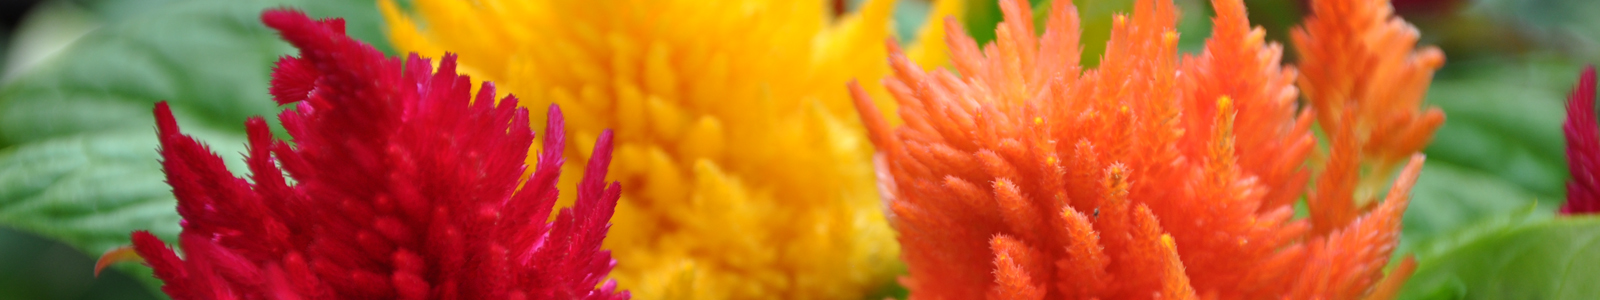 Rosa, gelbe und orange Blüte ©Dr. Köhler